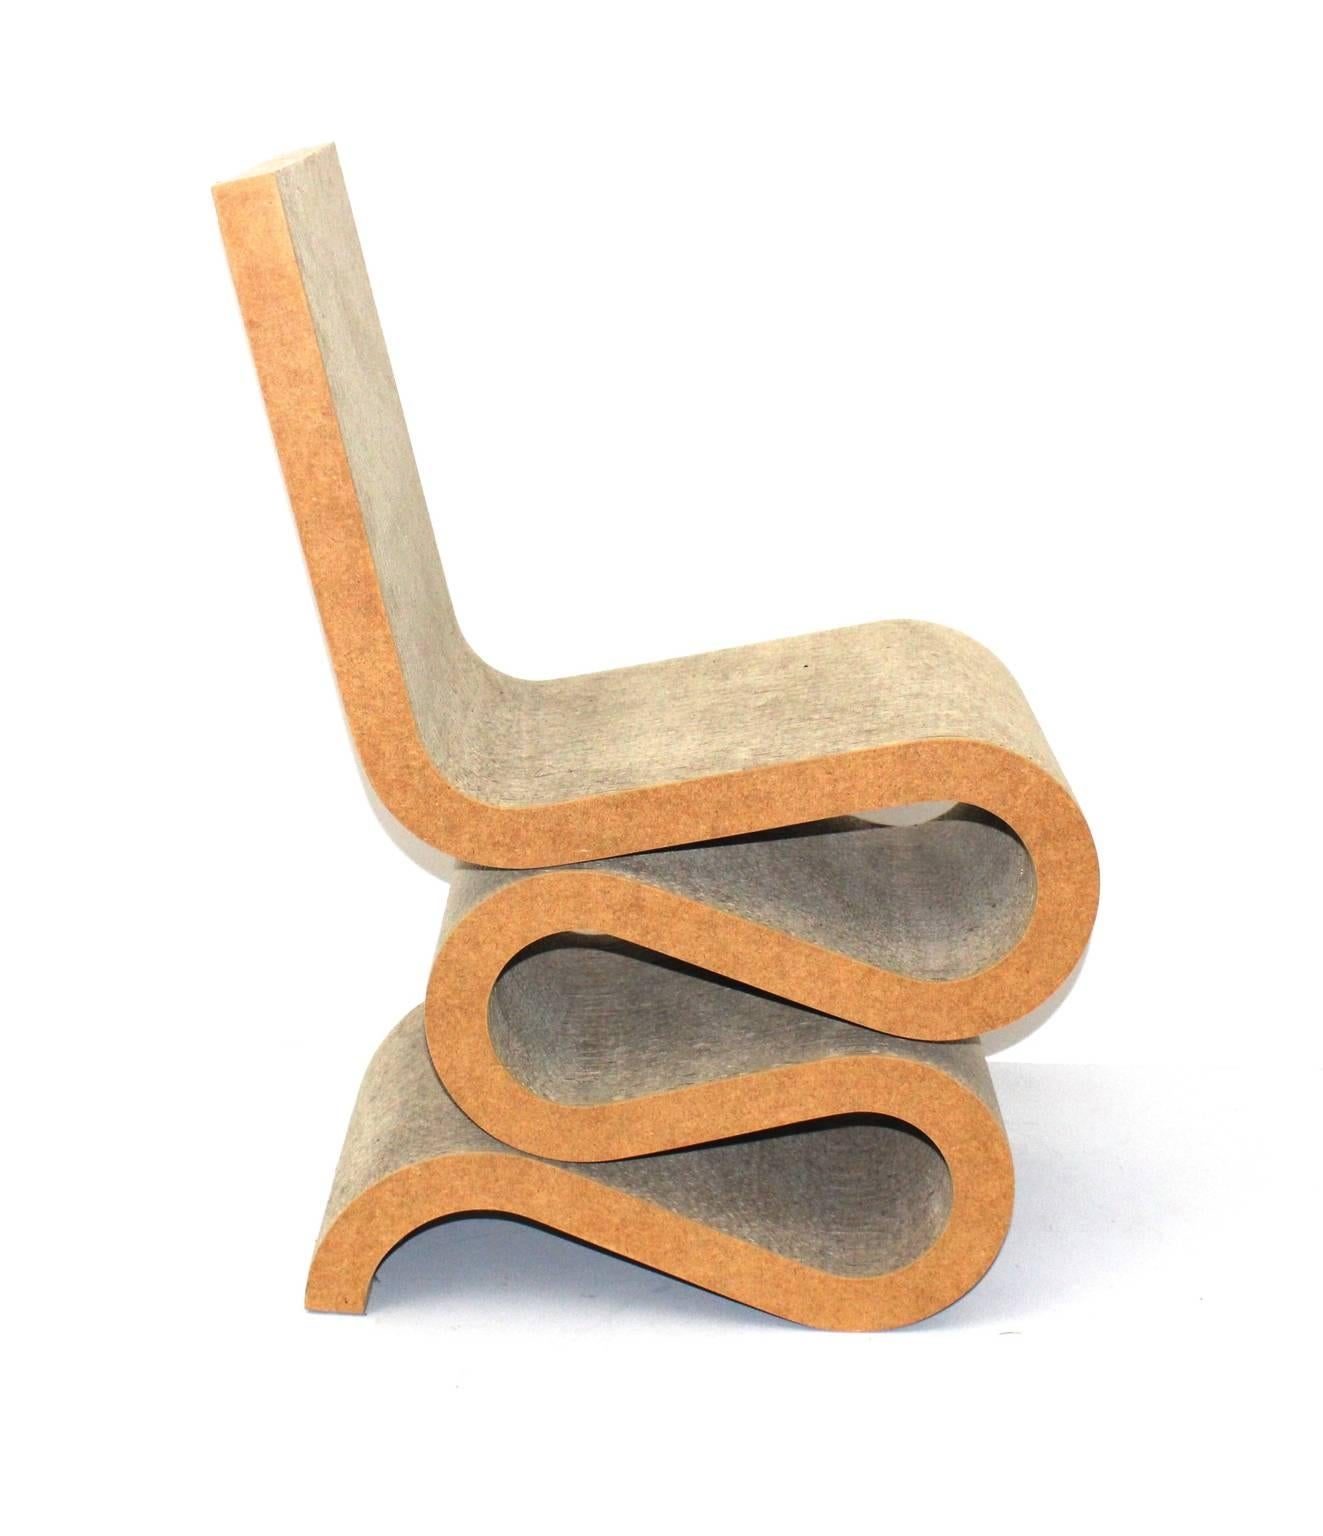 Ein Mid-Century Modern Vintage Wiggle Chair, die ein großes Design Side Chair von Frank O. Gehry, 1972 für Jack Brogan, USA 1972-1973 ist.
Von Vitra ab 1992 als Wiggle Beistellstuhl wiederveröffentlicht.
Der Wiggle Side Chair im Vintage-Stil ist aus